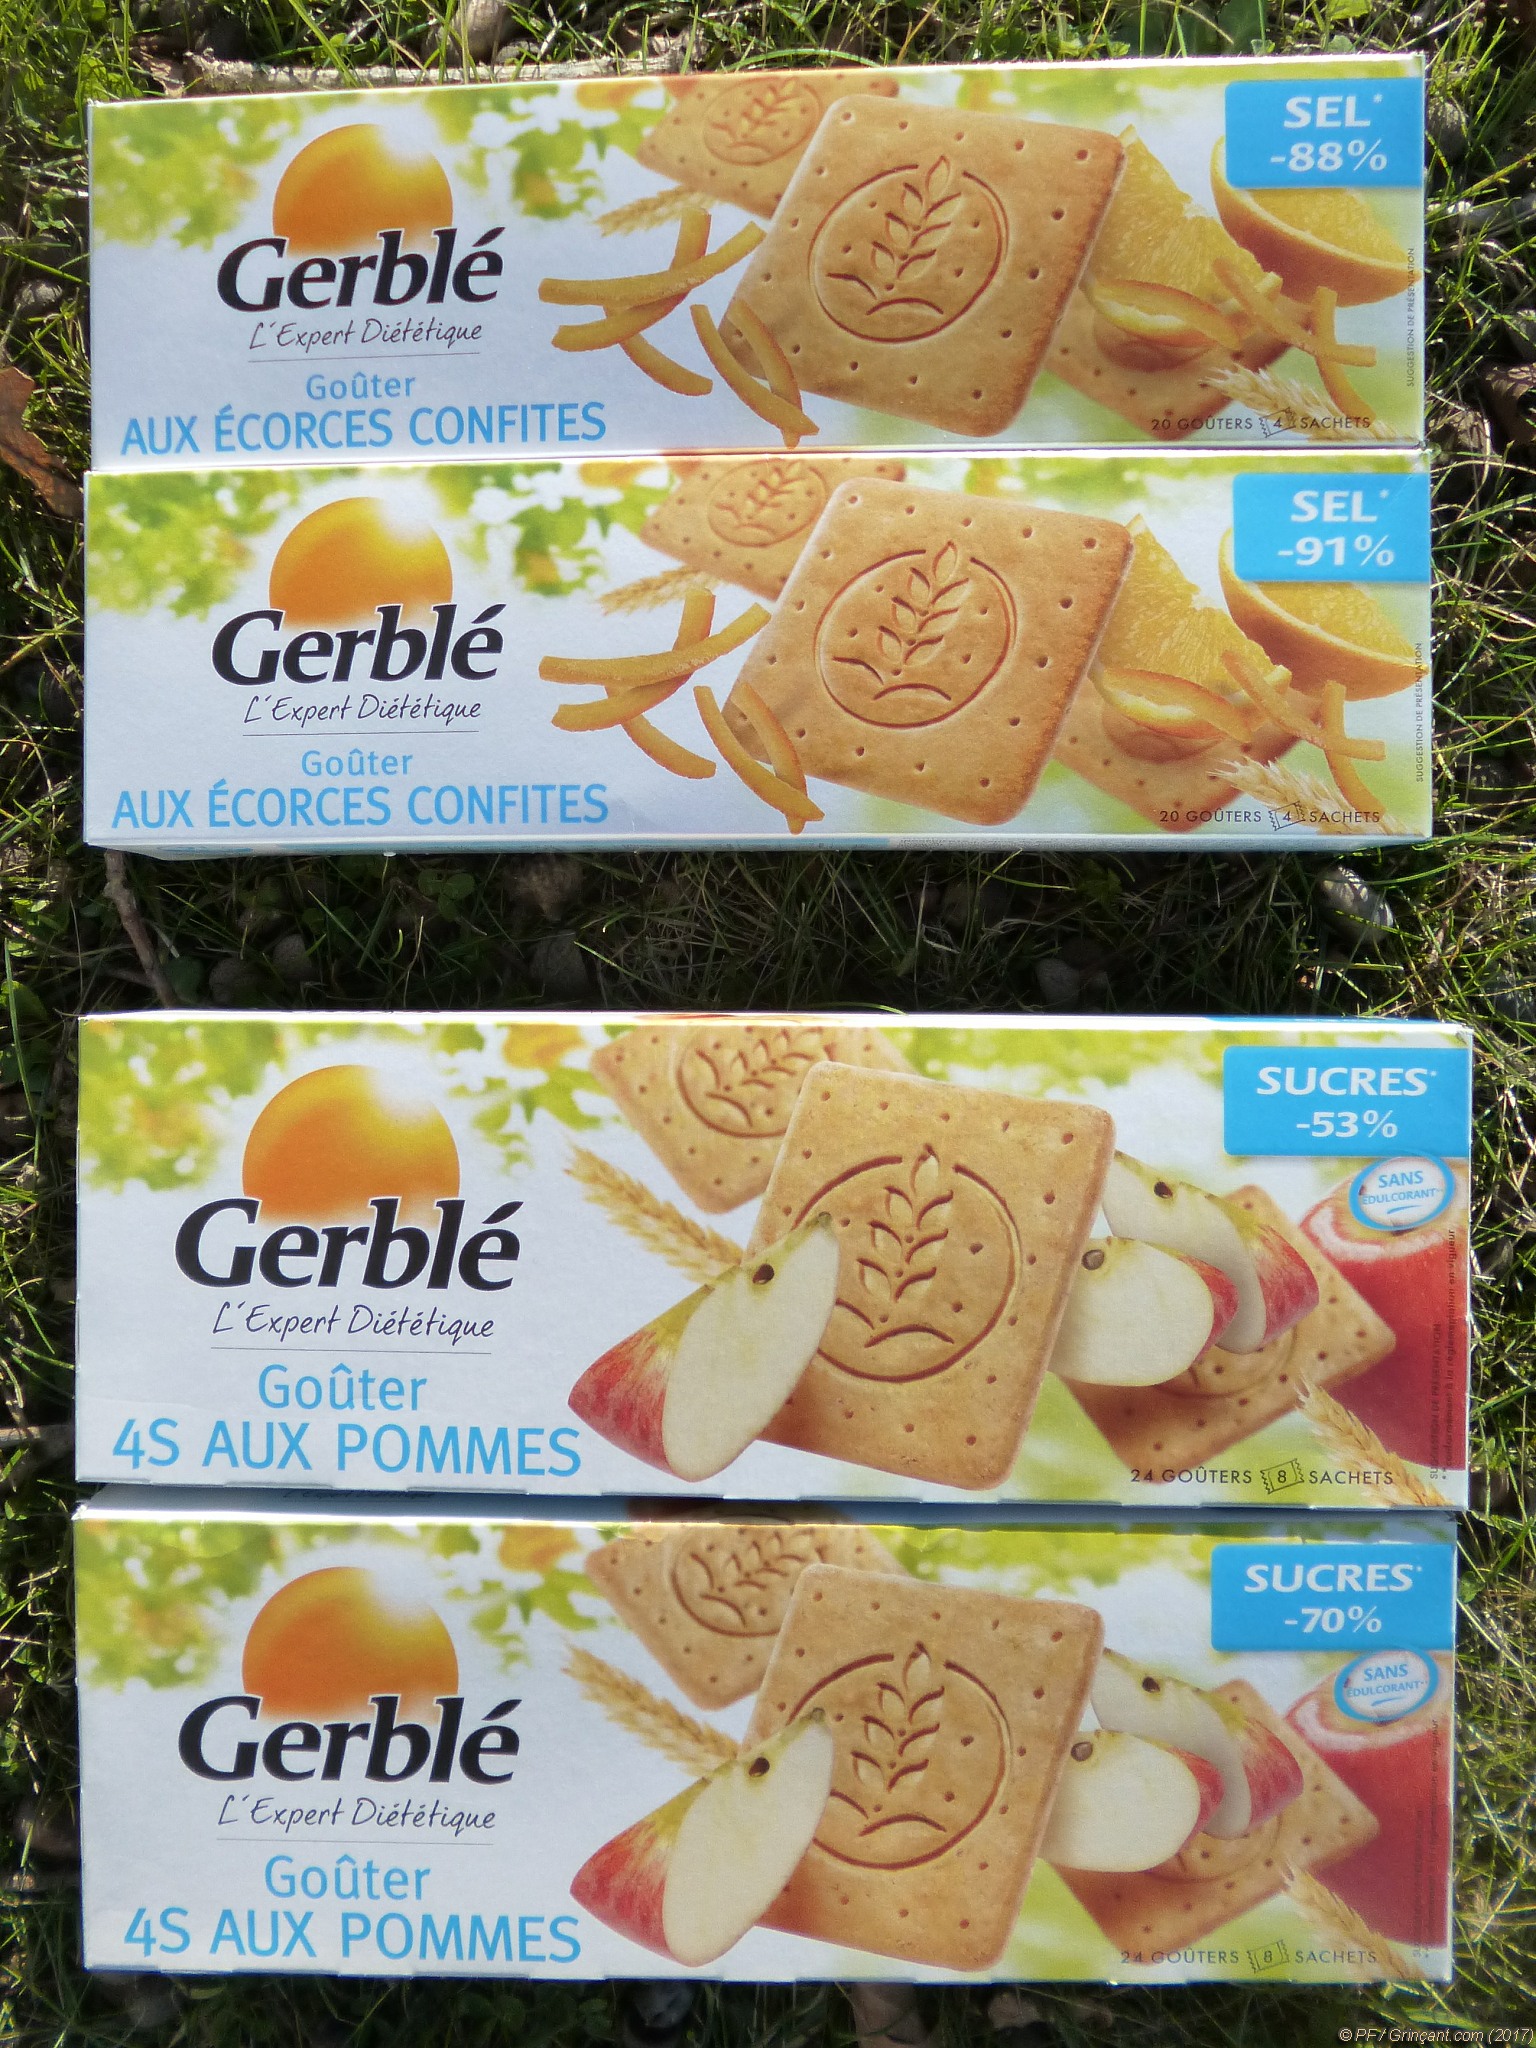 Biscuits Gerblé, drôles de salades pour le goûter